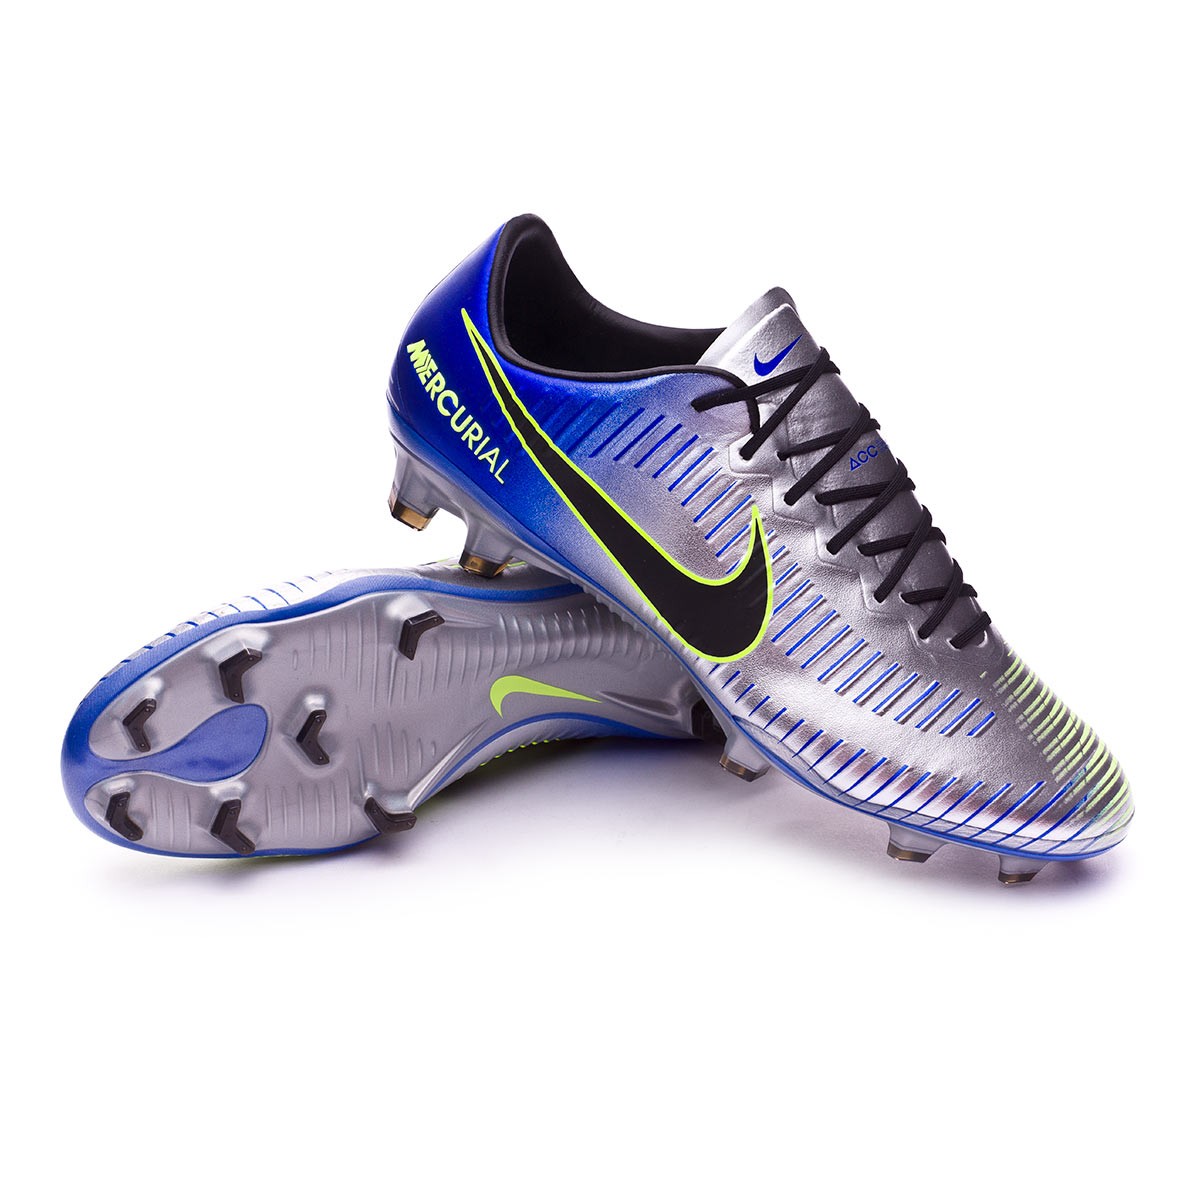 Zapatos de fútbol Nike Mercurial Vapor XI FG Neymar Racer  blue-Black-Chrome-Volt - Tienda de fútbol Fútbol Emotion